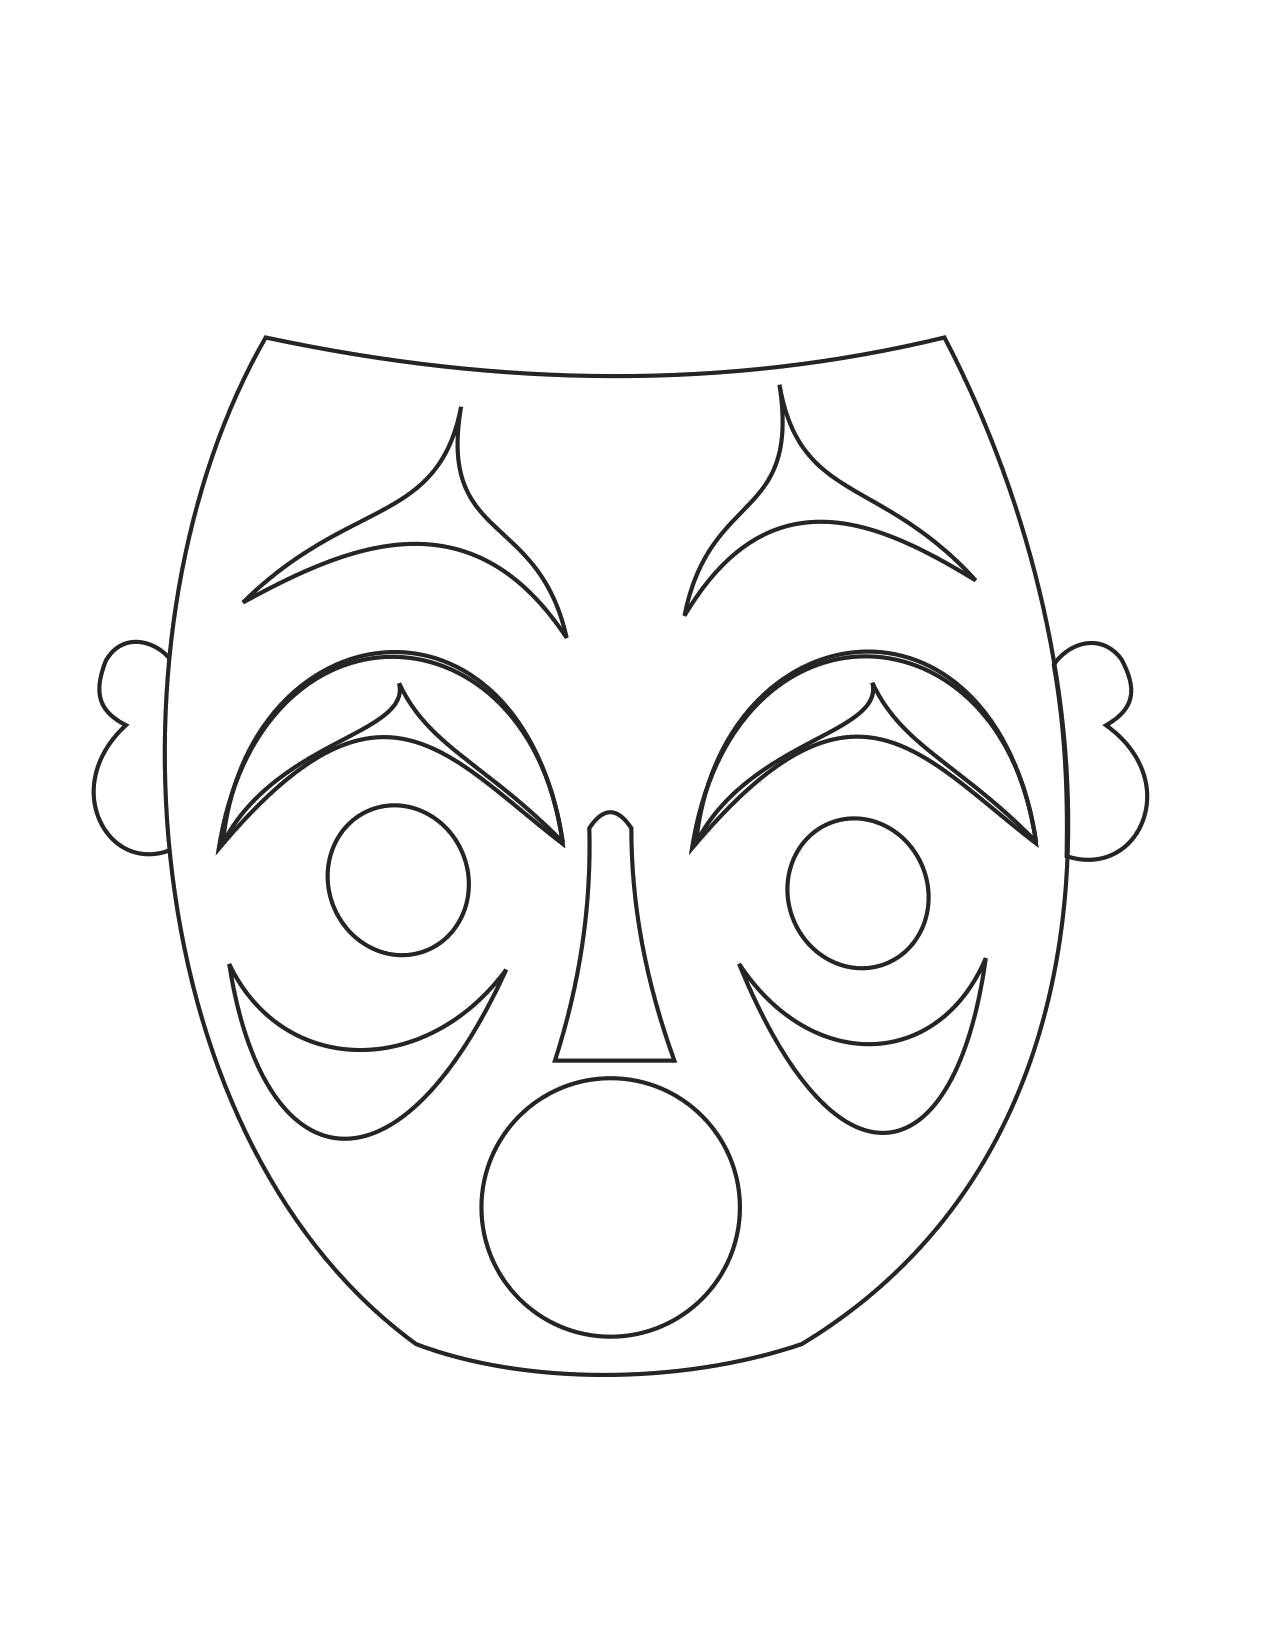 Распечатать картинку маску. Маска раскраска для лица в пакетах с яблоком.